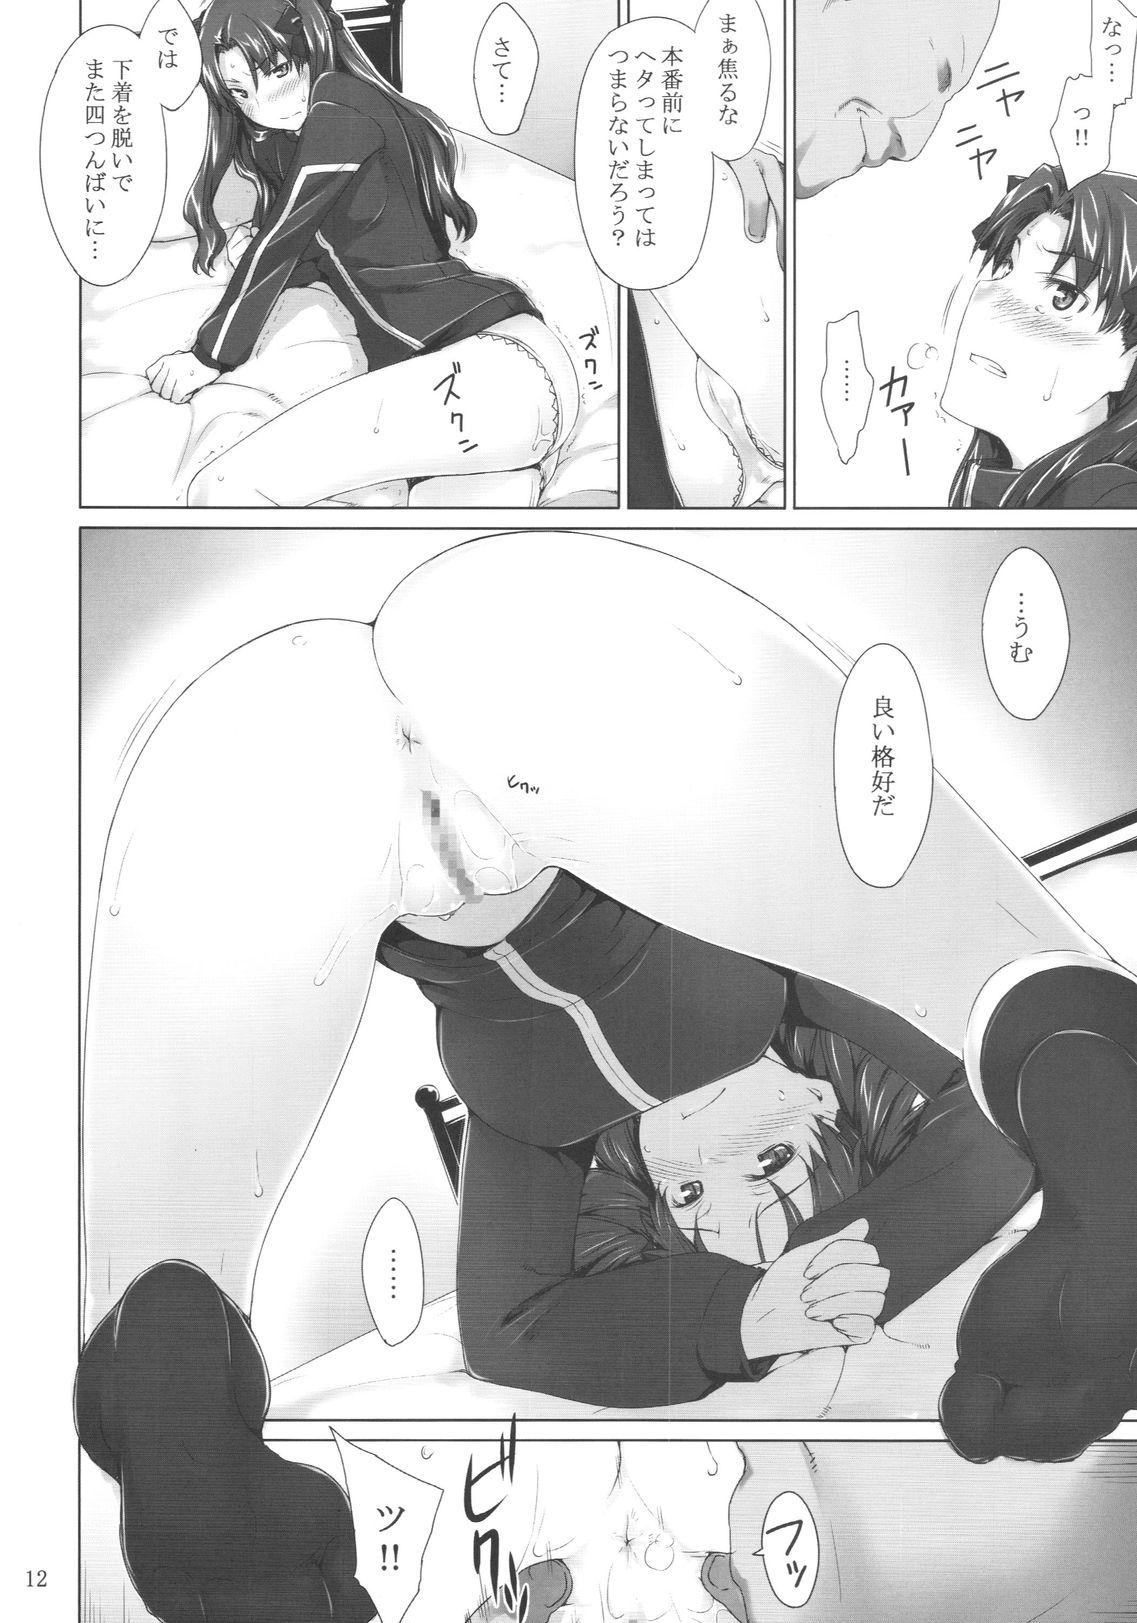 Gapes Gaping Asshole Tohsaka-ke no Kakei Jijou 5 - Fate stay night Muscle - Page 11